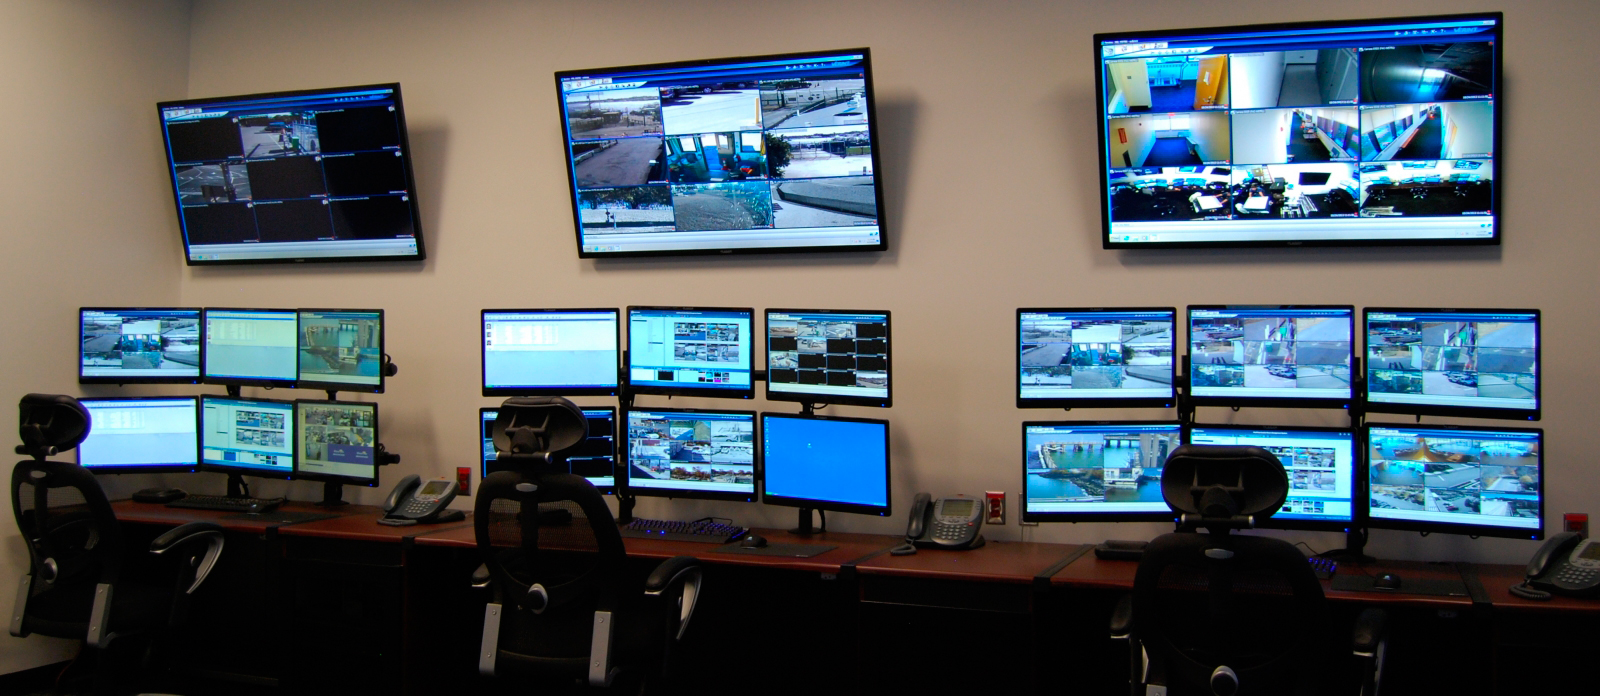 Puestos de mando y vigilancia con video wall